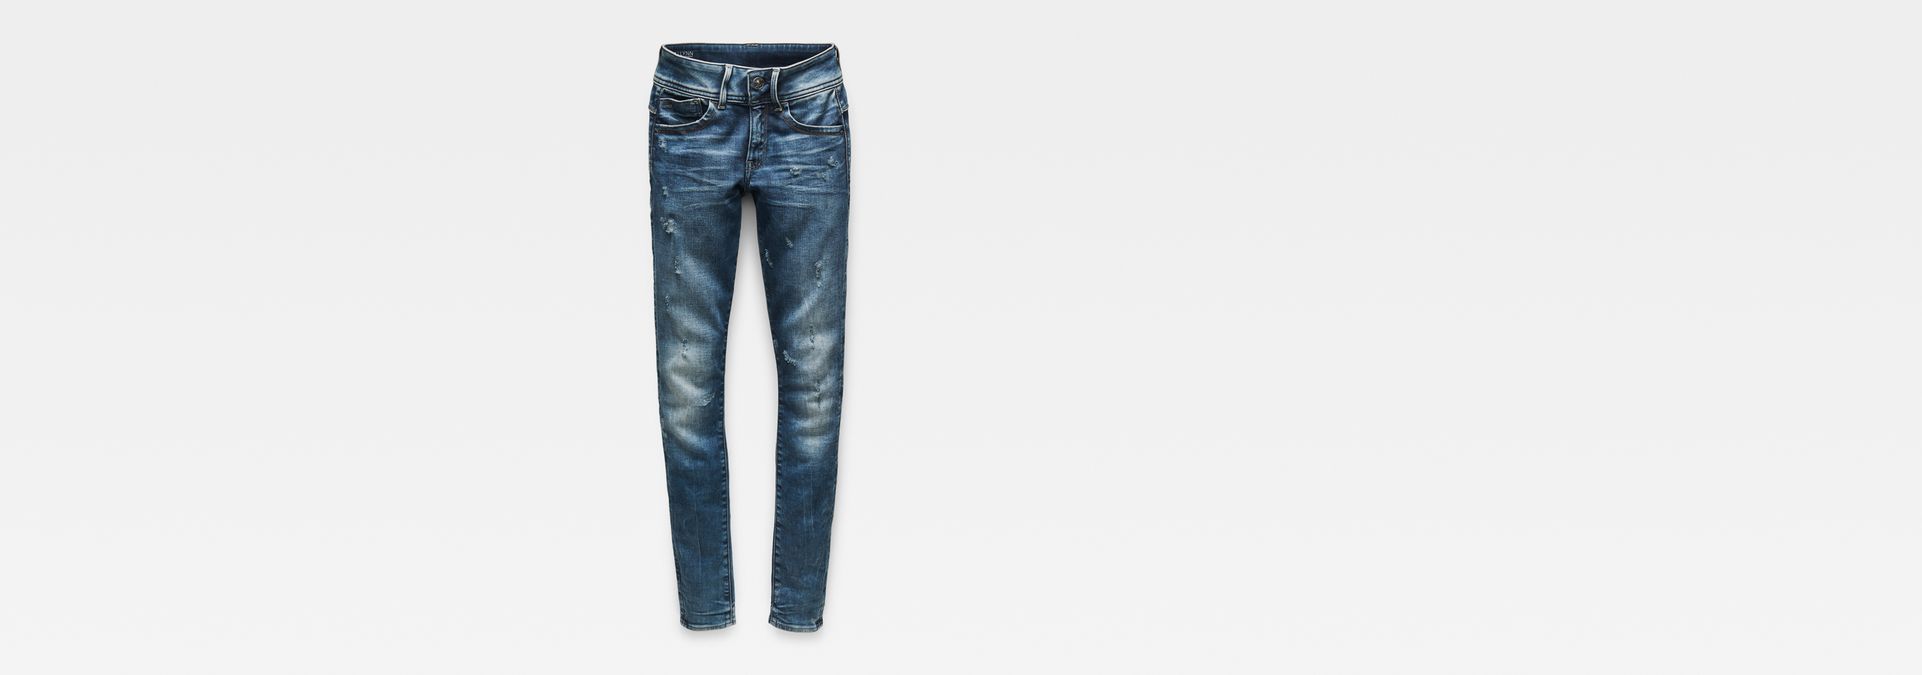 60367.4660.071 MEDIUM AGED G-STAR Jeans LYNN SKINNY WMN SLIM FIT blau+NEU+ 